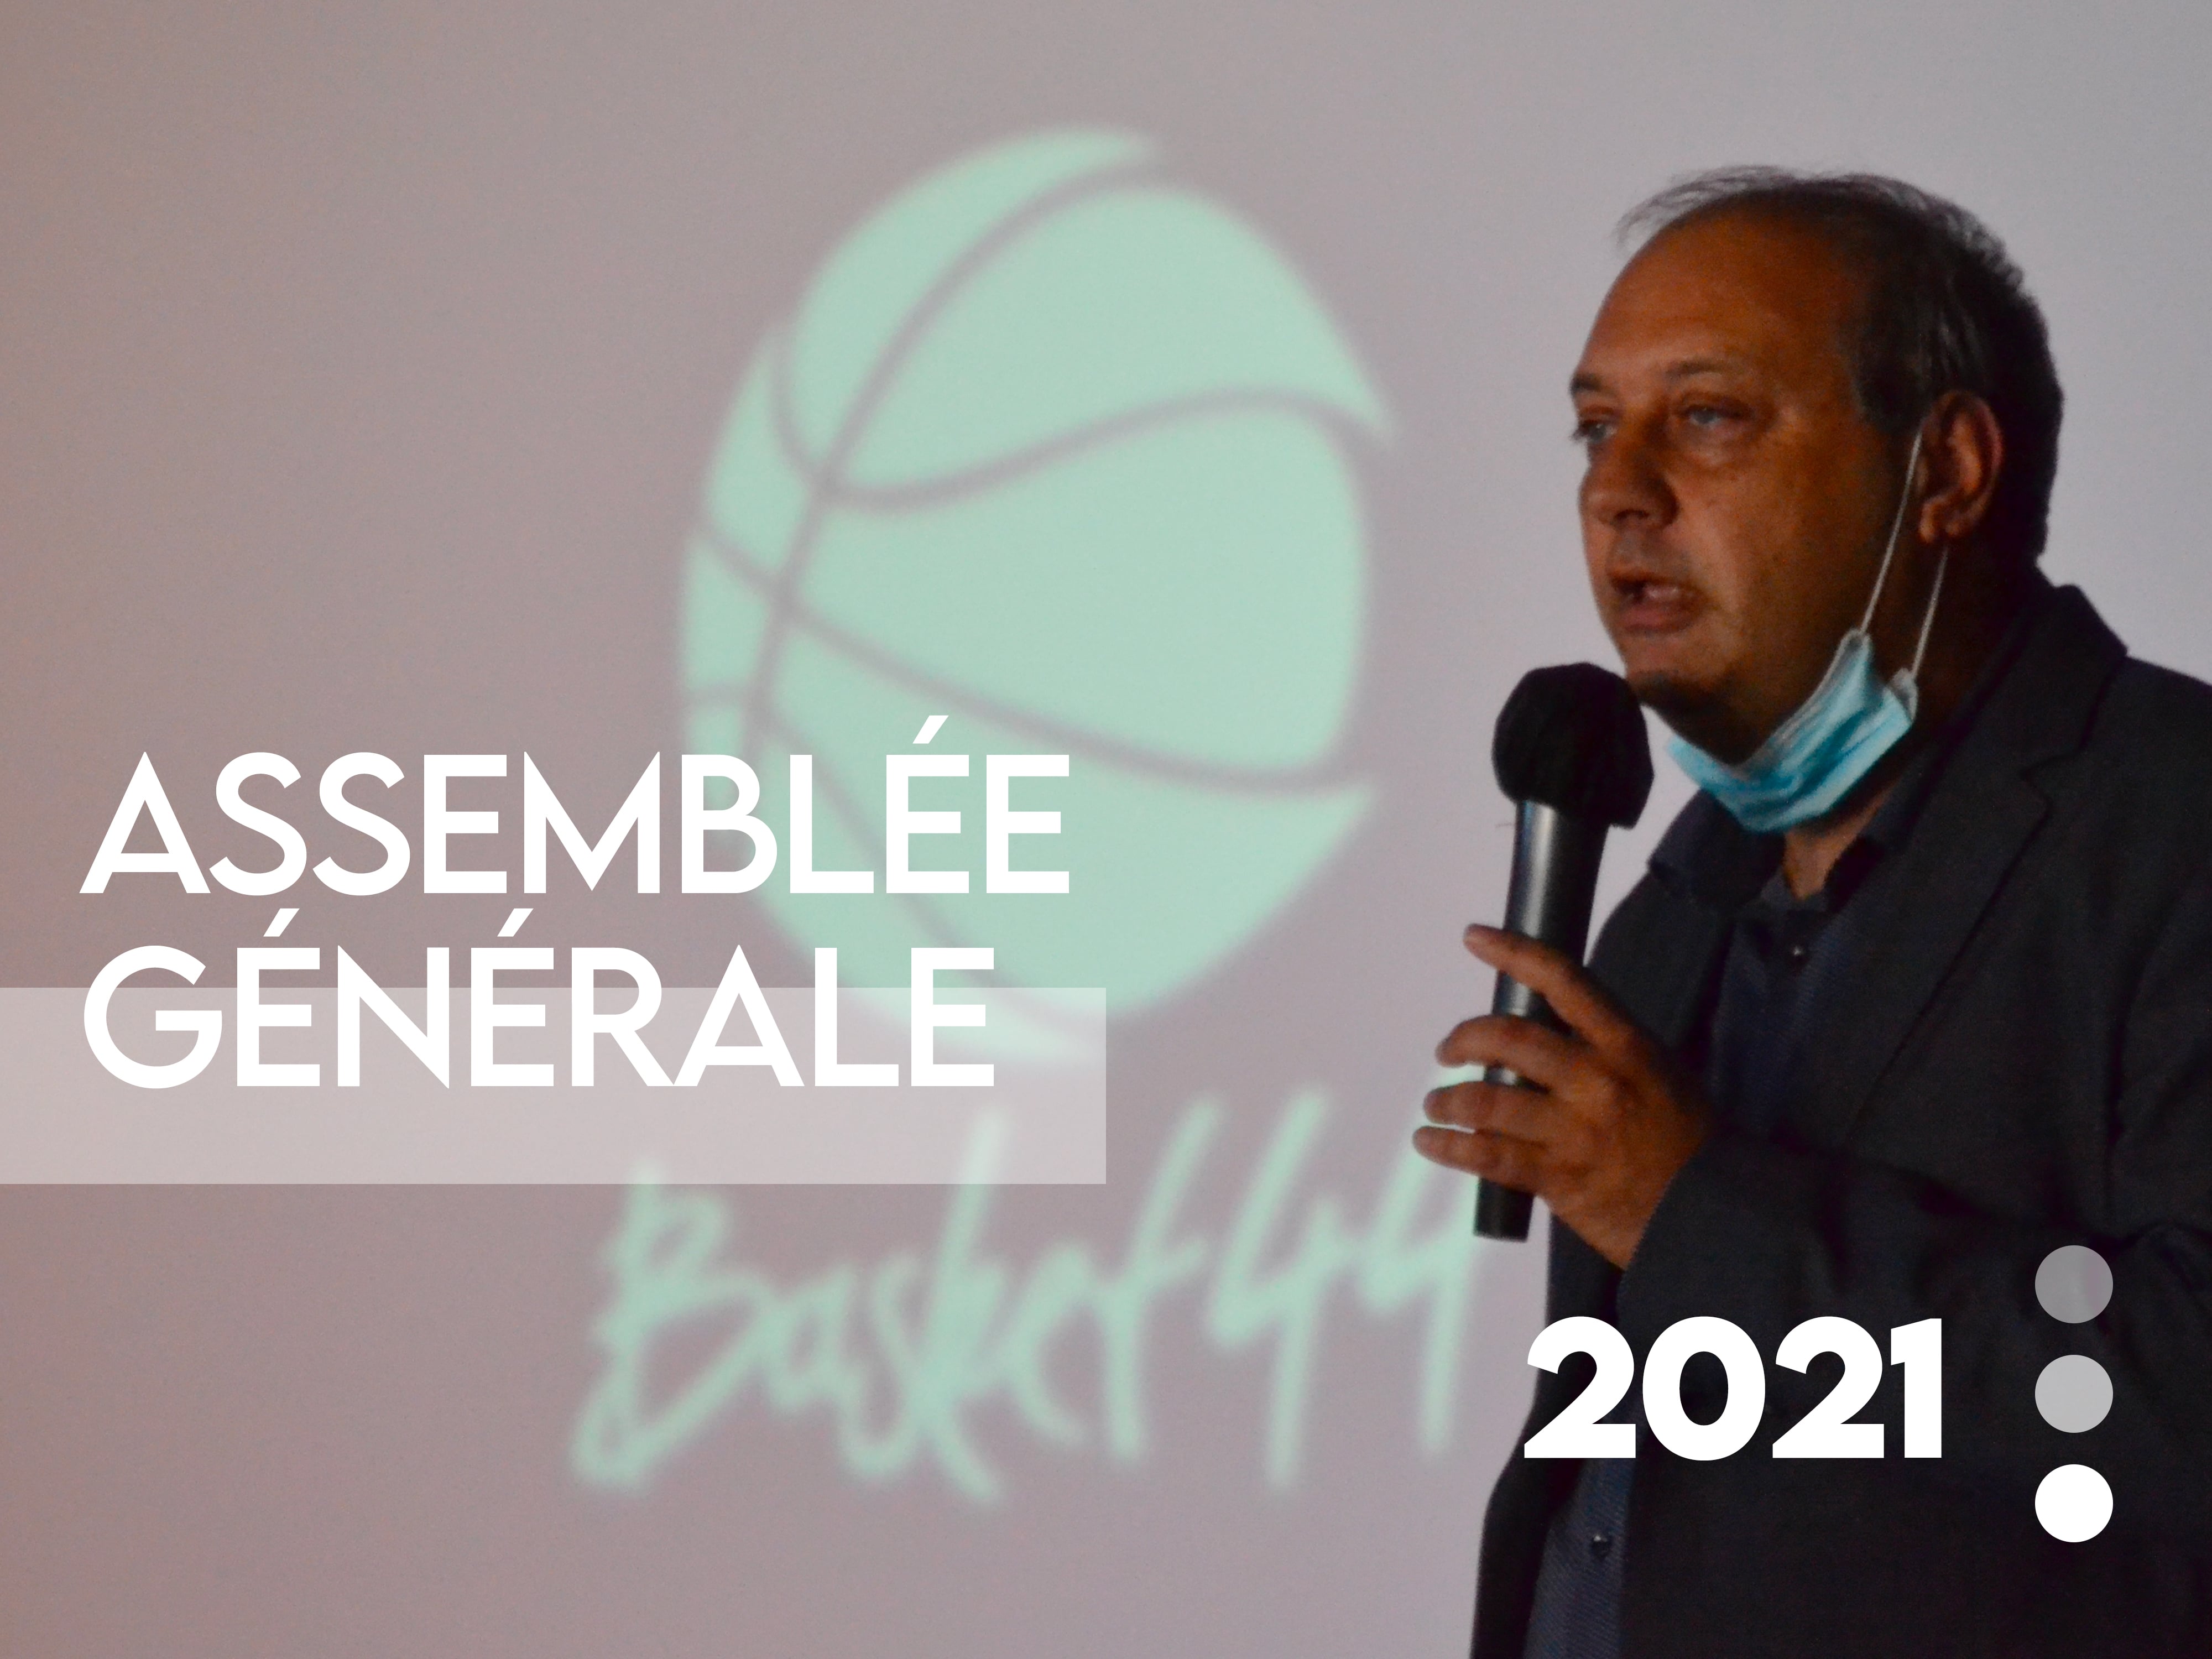 Assemblée Générale 2021